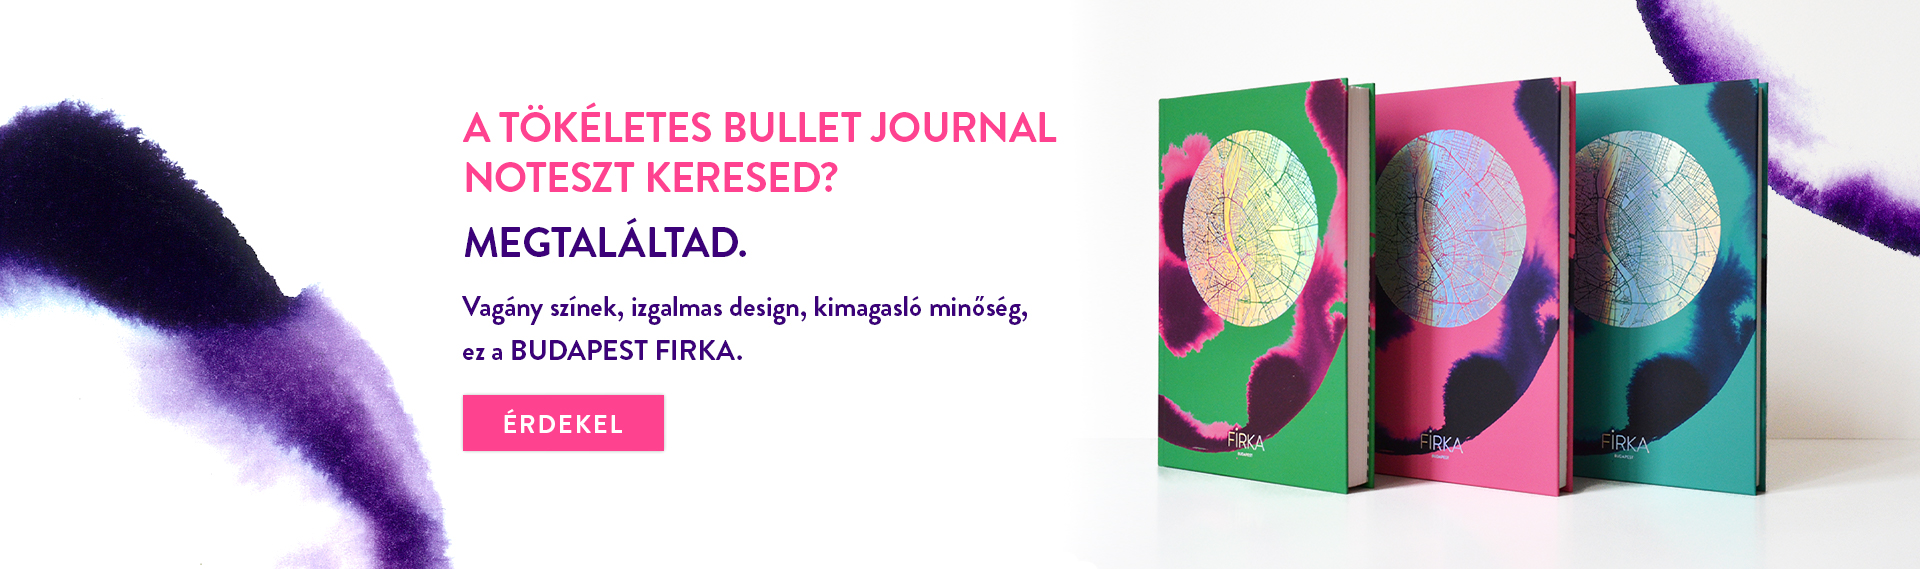 Budapest Firka bullet journal új kollekció